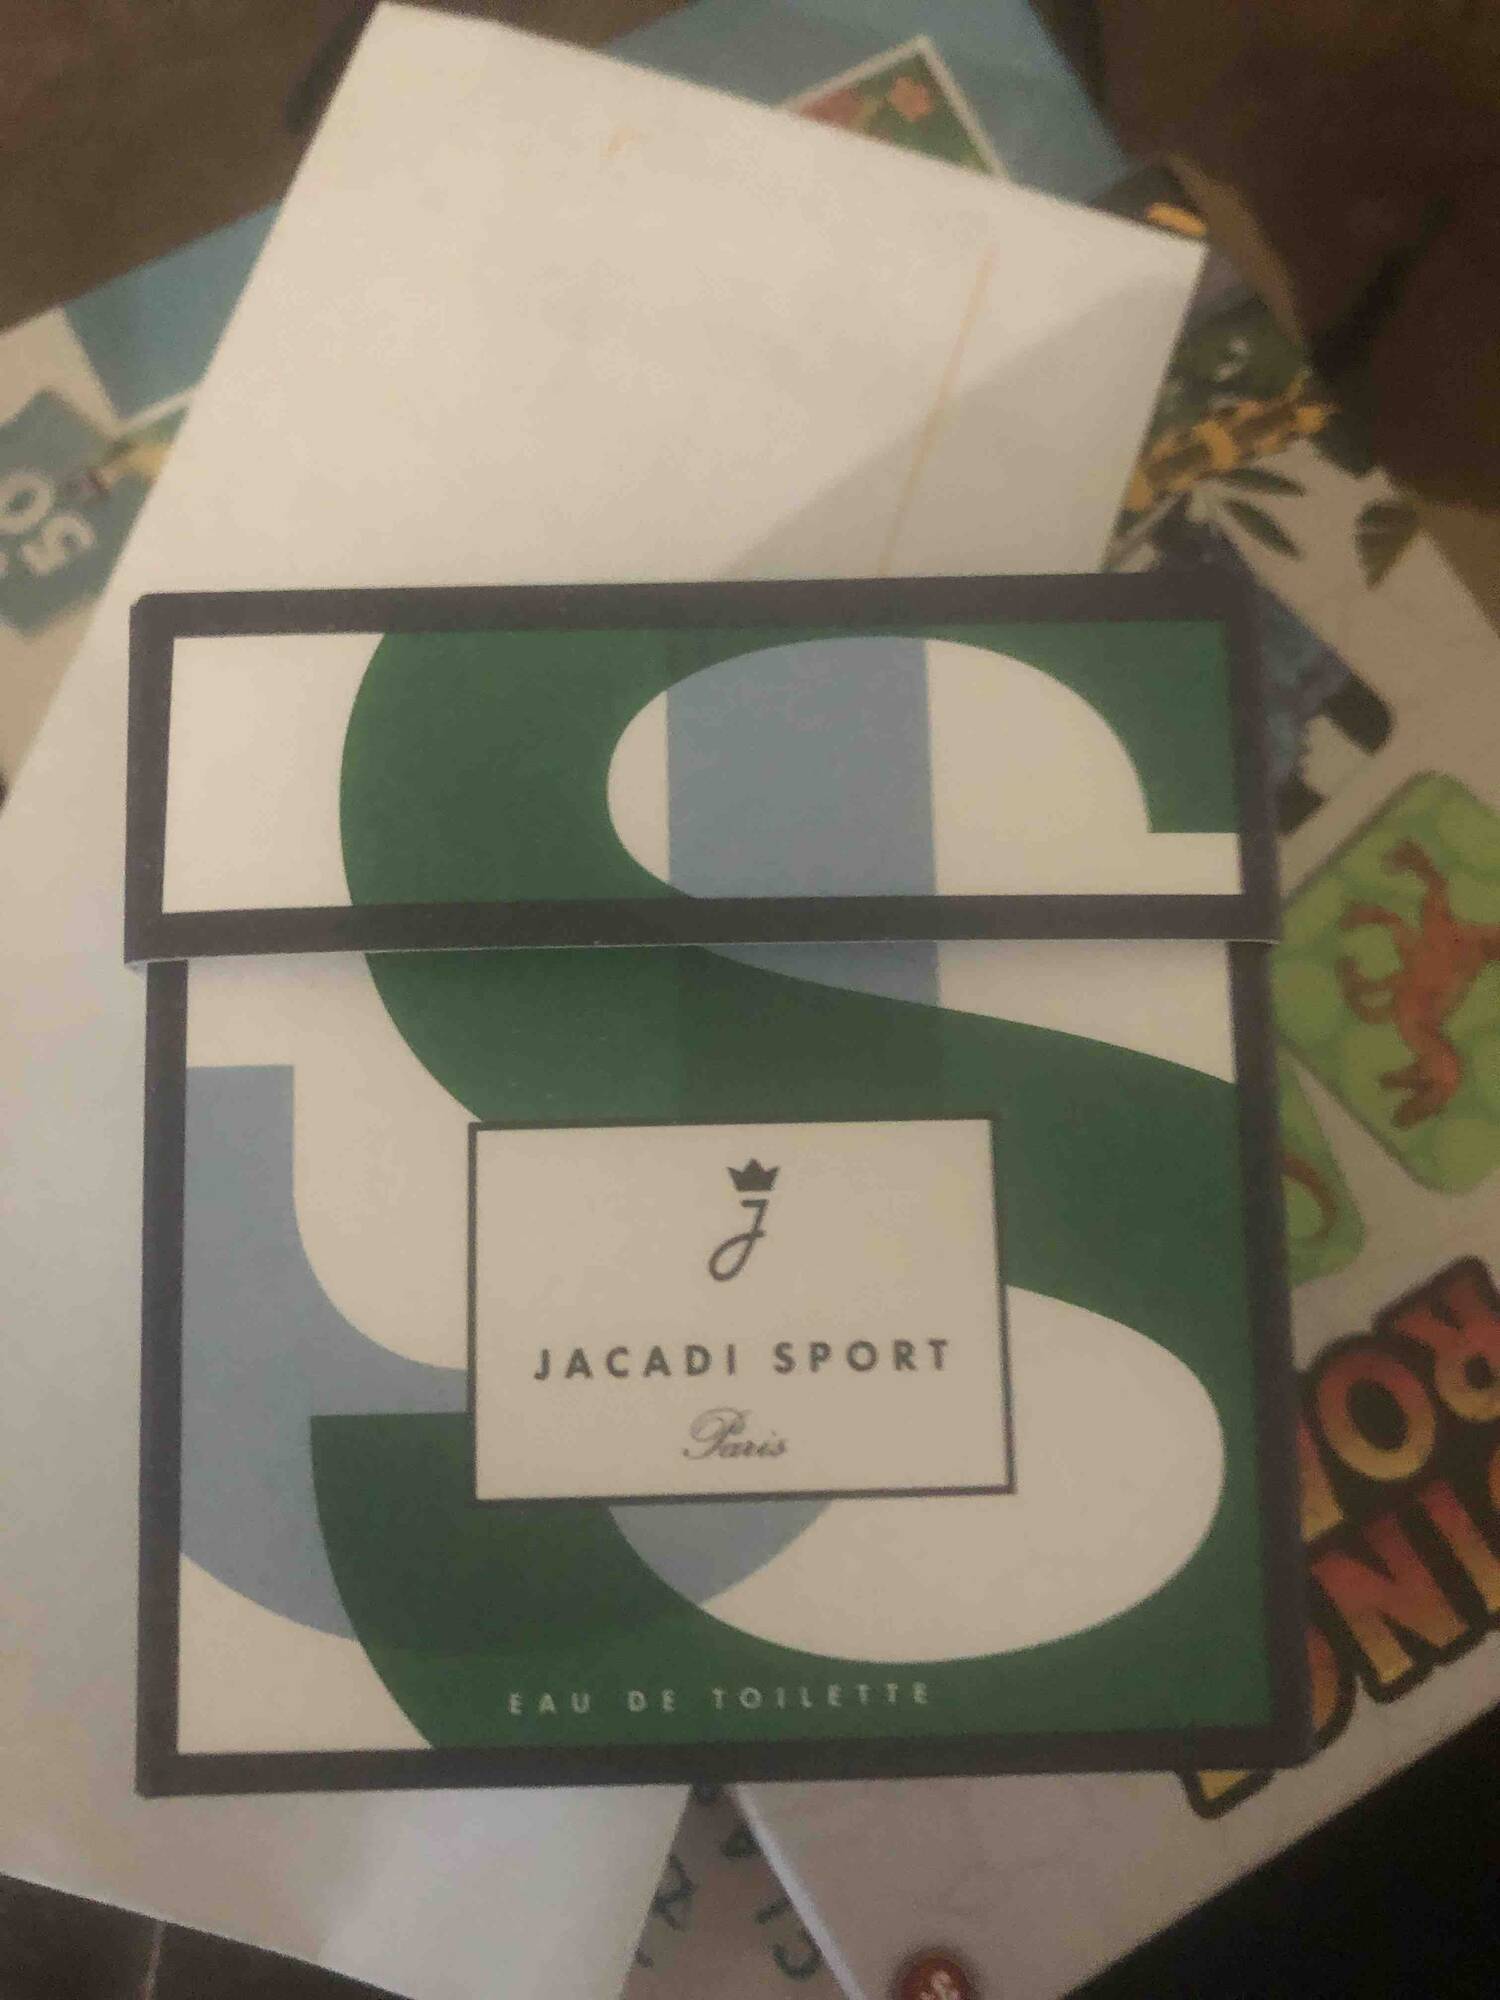 JACADI - Jacadi Sport - Eau de toilette